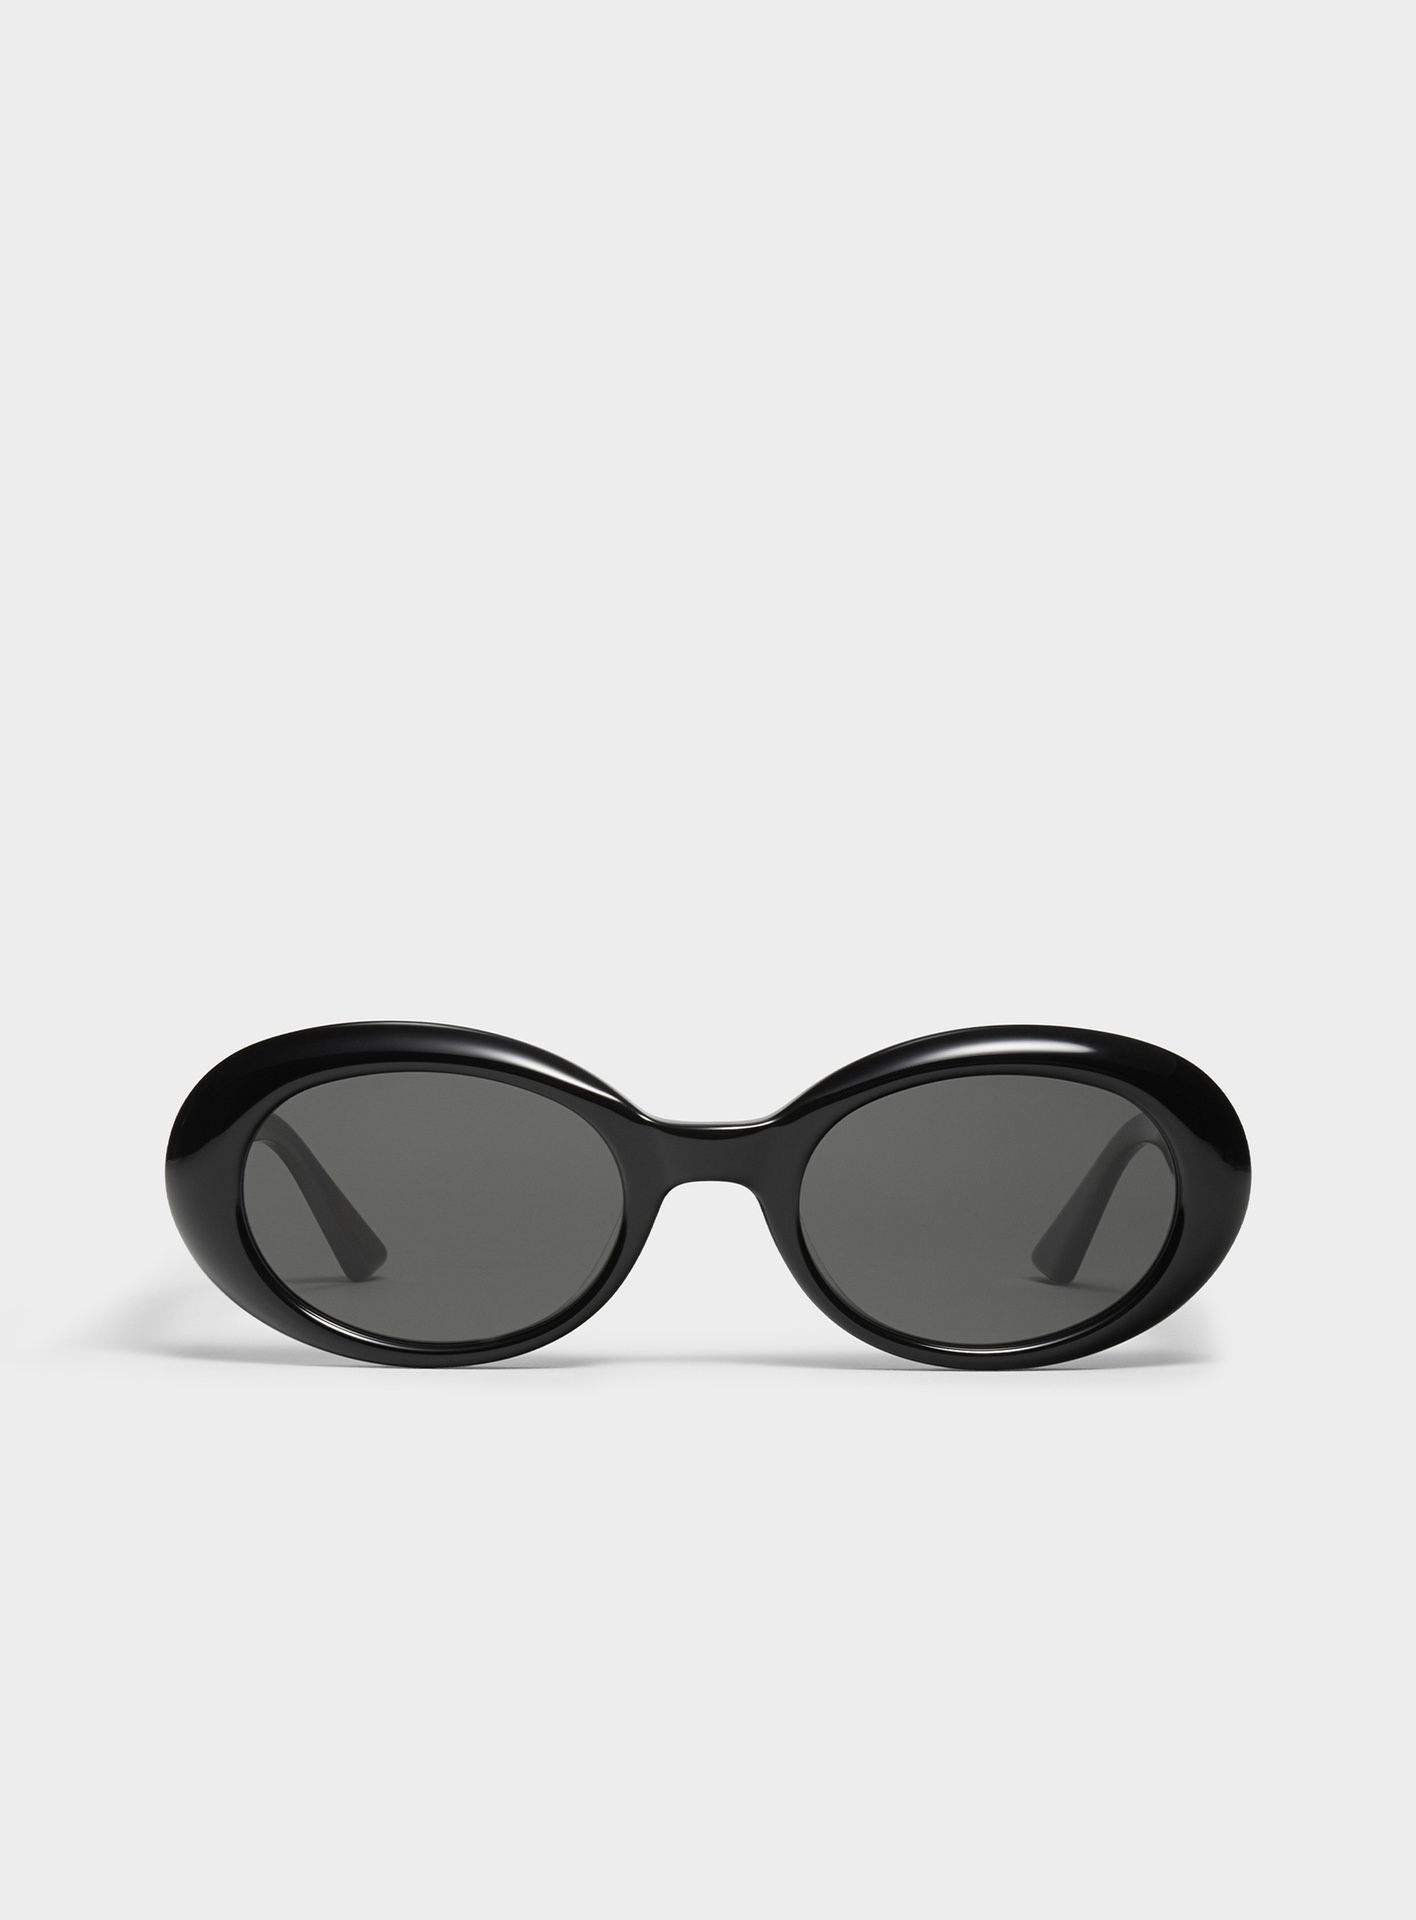 Nya runda solglasögon män designer metall retro solglasögon modestil fyrkantig uv 400 lins utomhusskydd